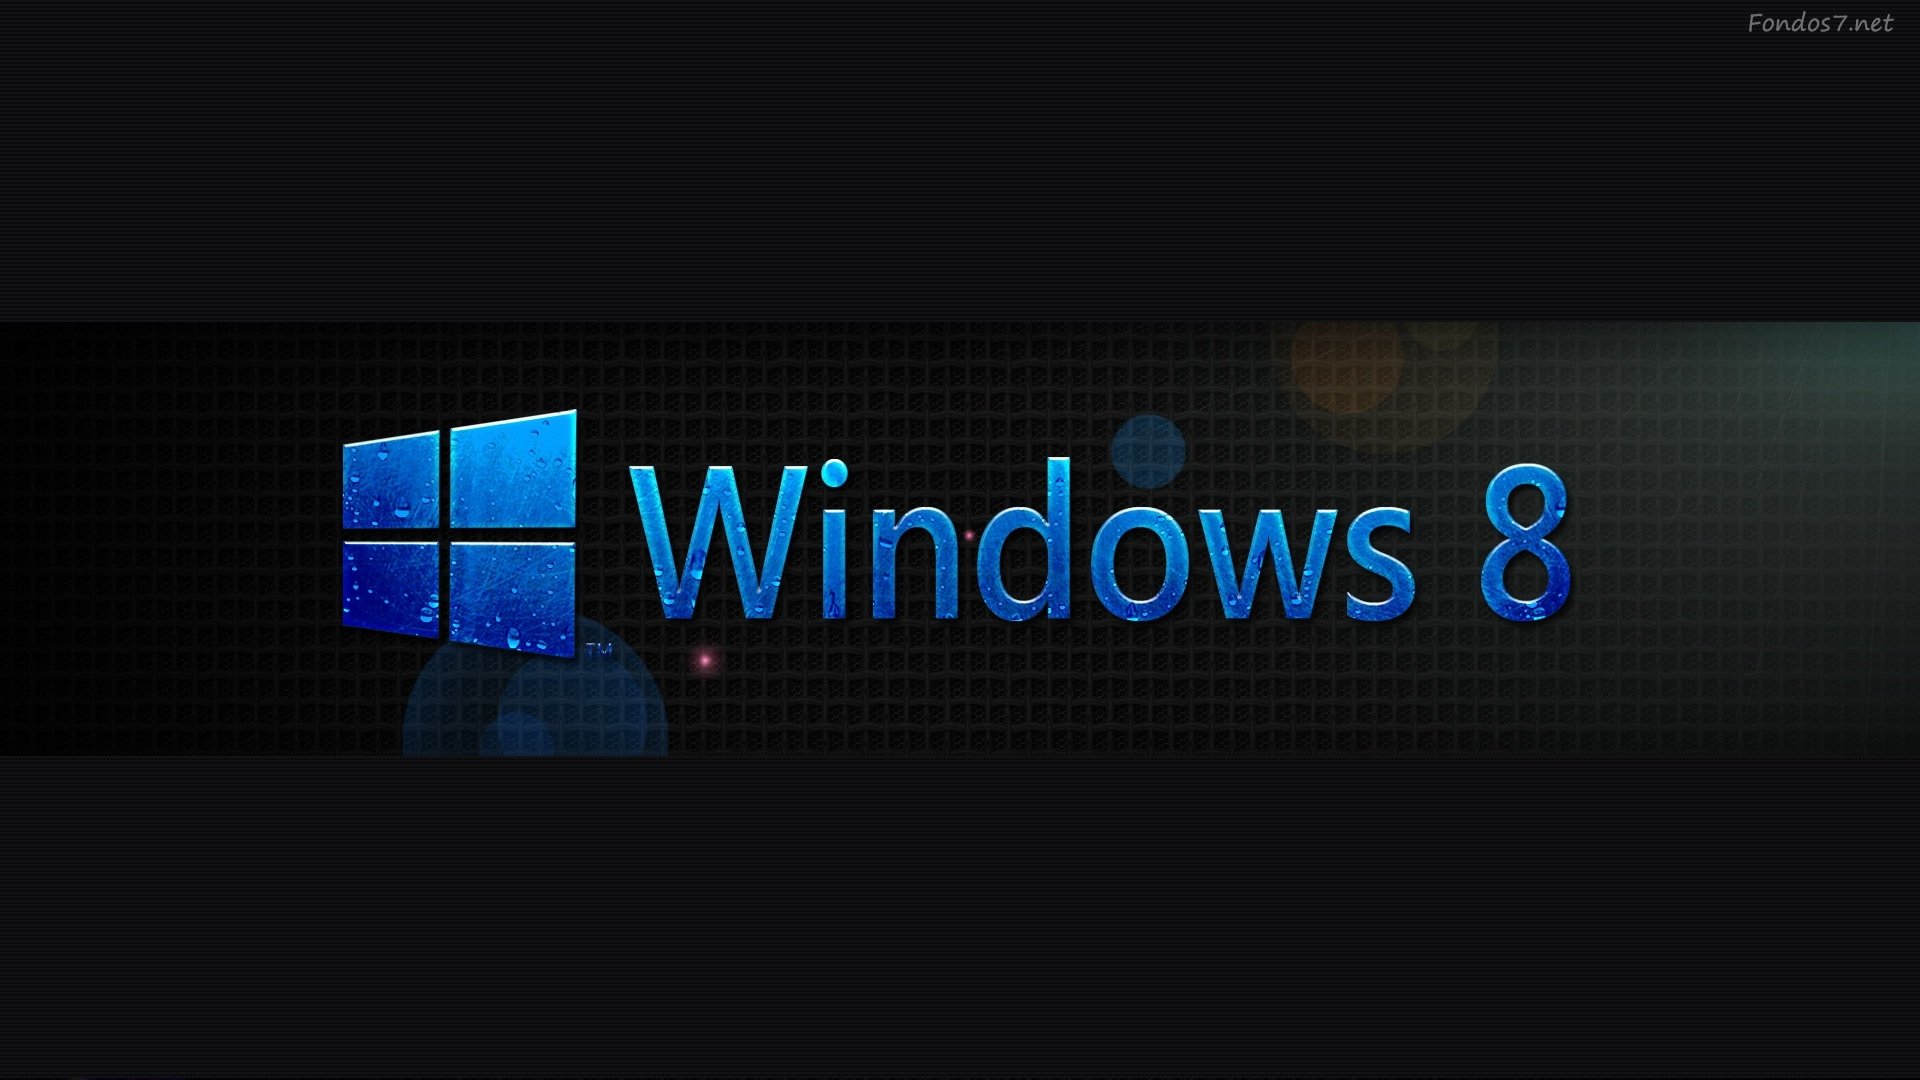 Windows 8 2014 1920x1080